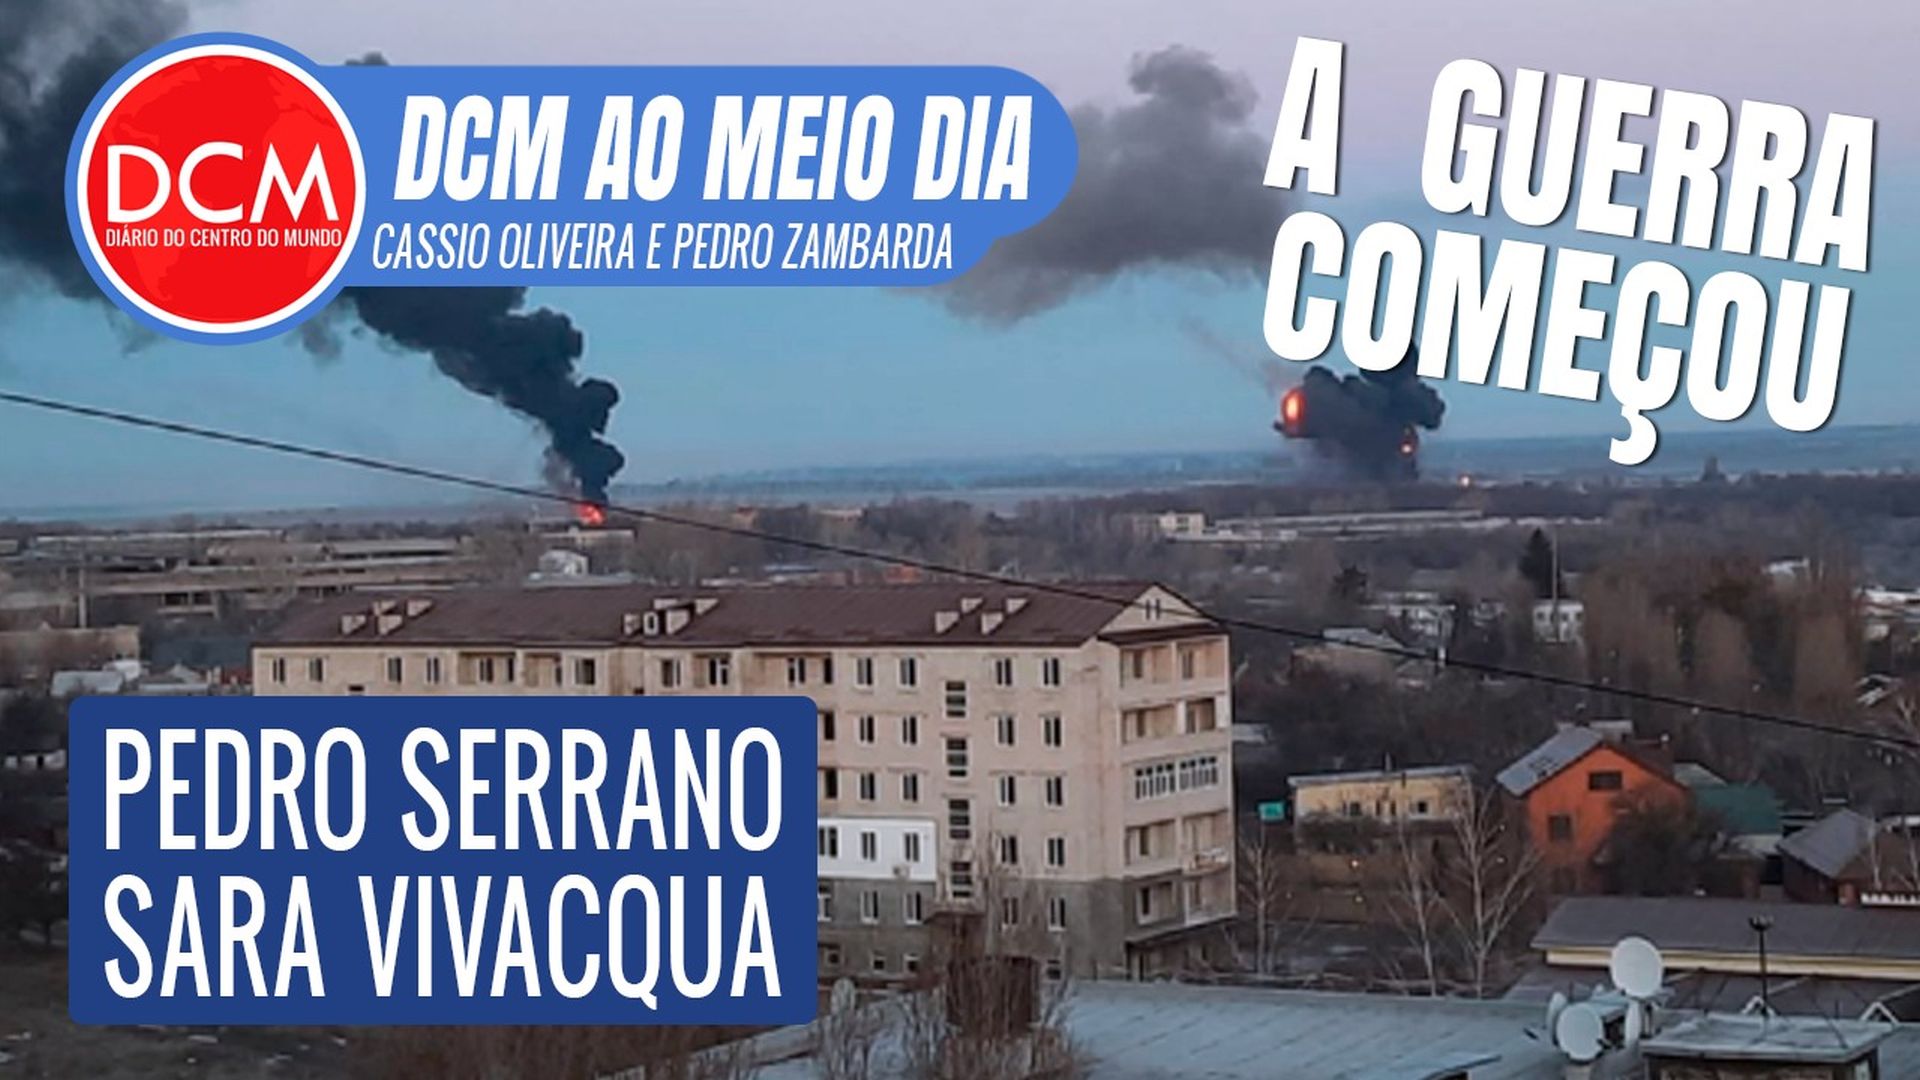 DCM Ao Meio-Dia: Rússia amplia ataque à Ucrânia; embaixada em Kiev manda brasileiros fugirem